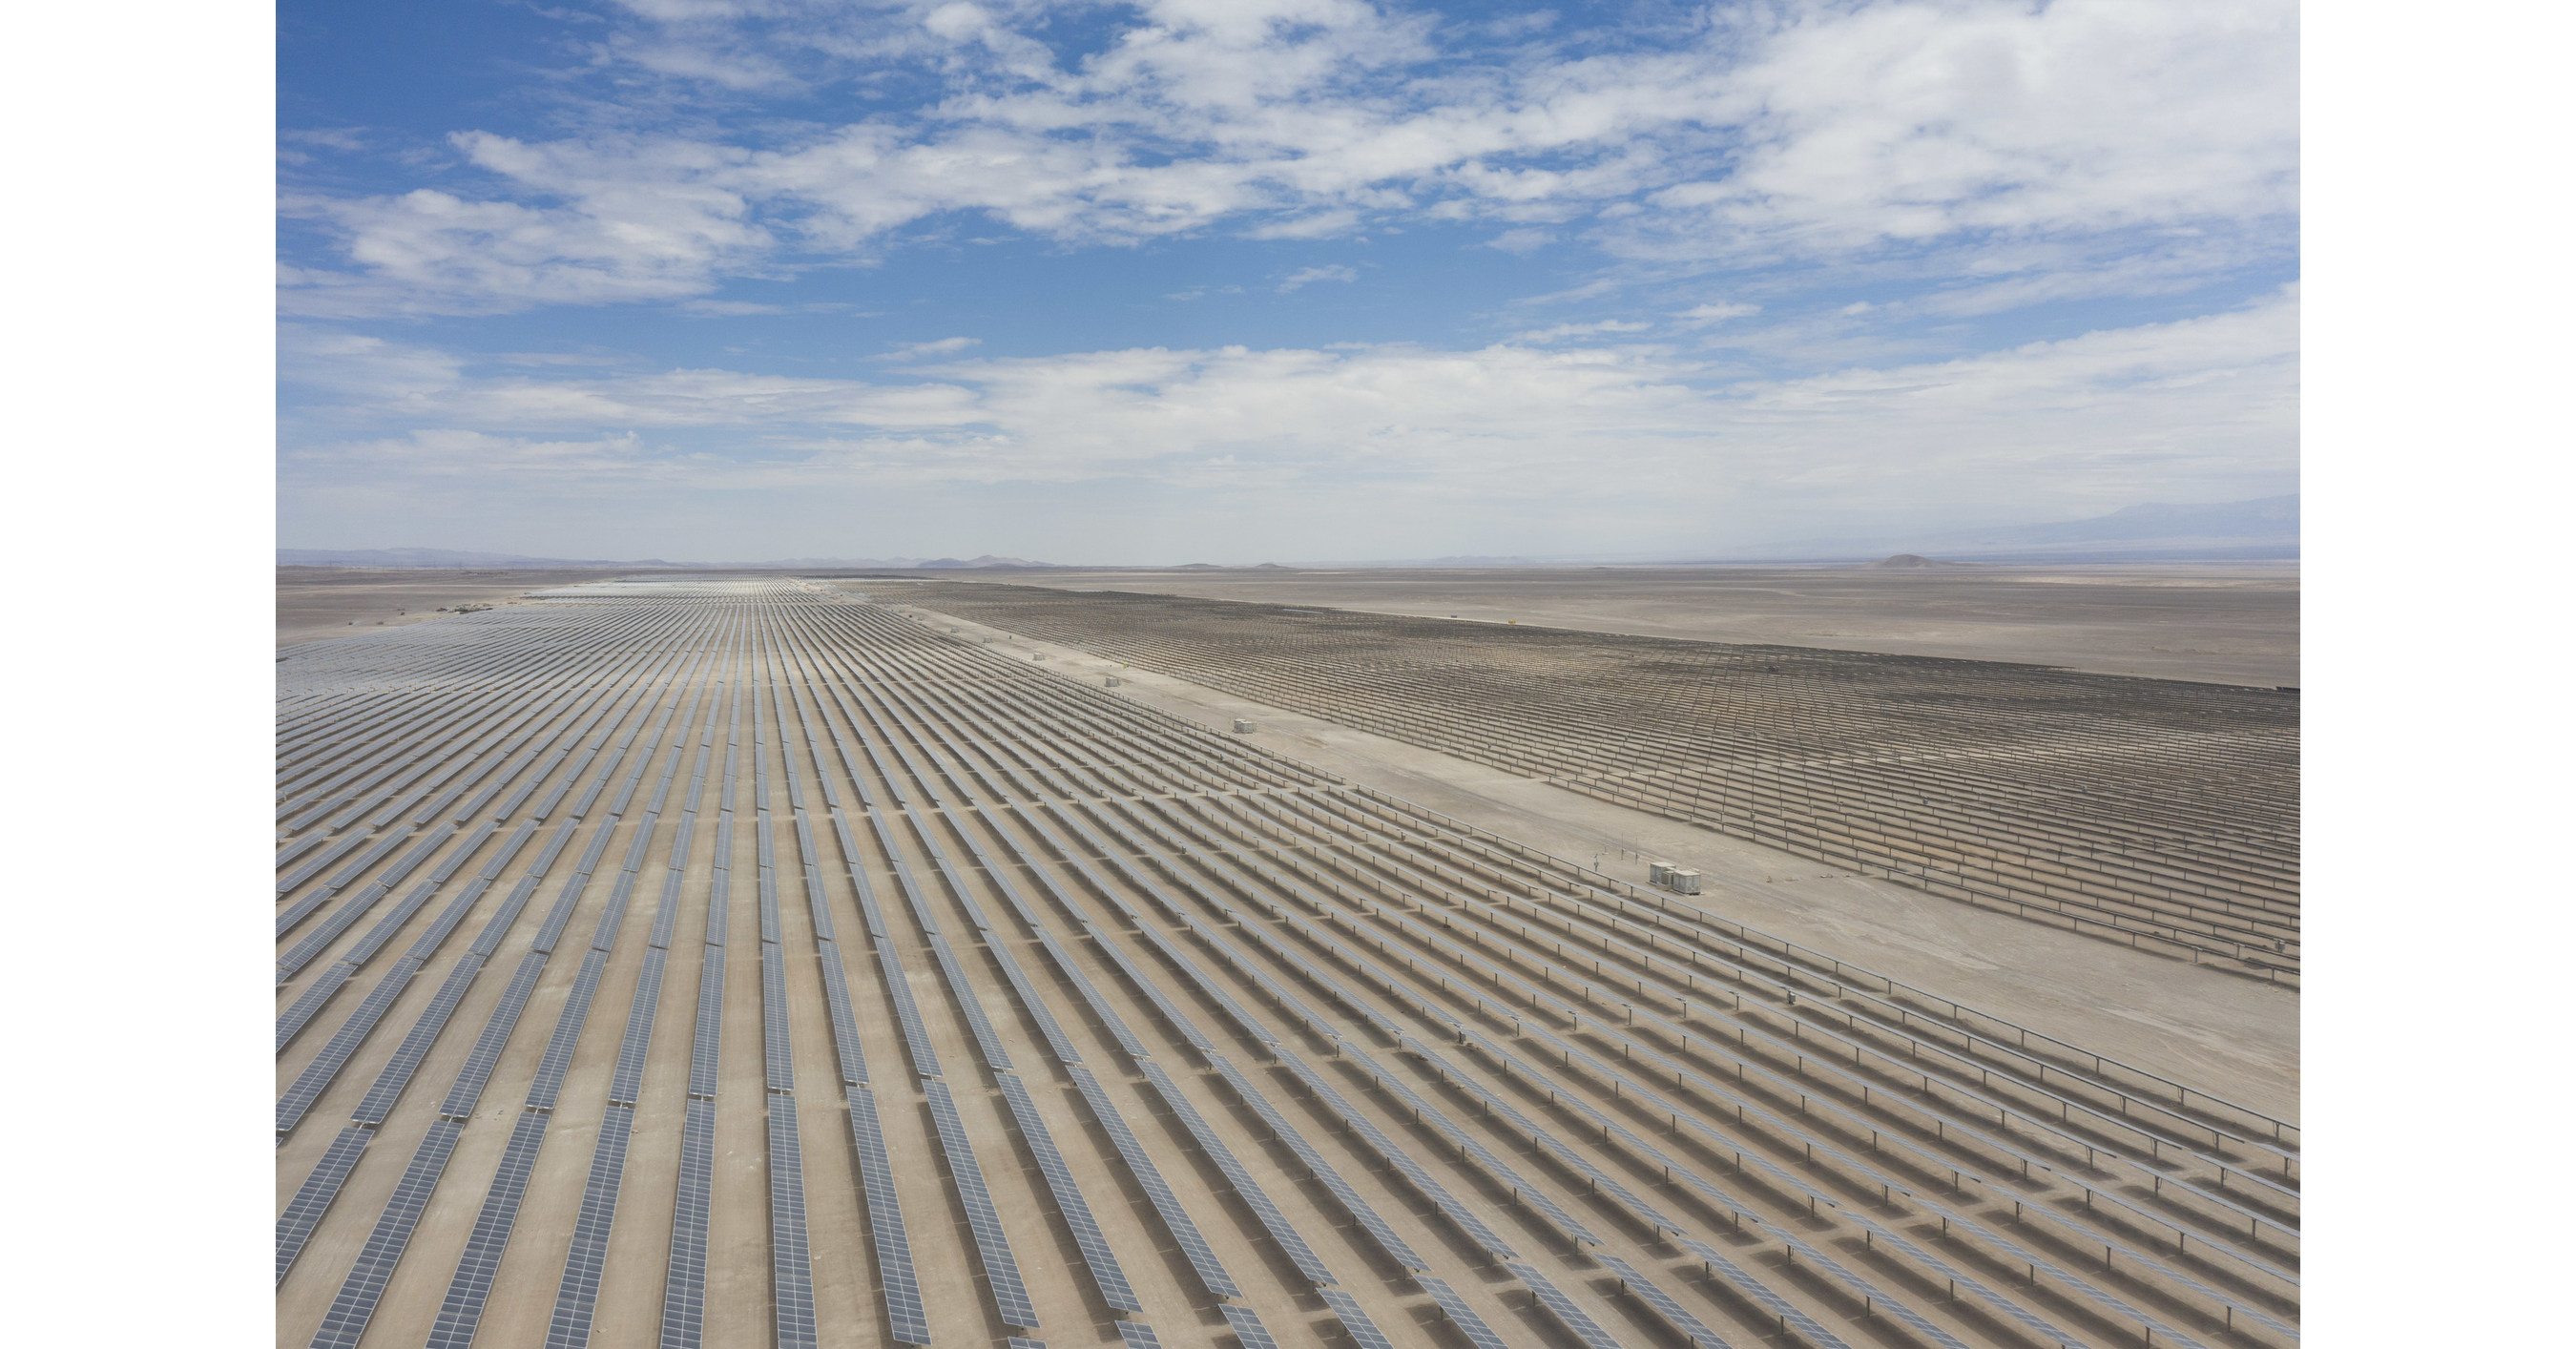 La planta solar Sol del Desierto (244 MW) de Atlas Renewable Energy en Chile evitará emisiones de CO2 equivalentes a 47.000 vehículos al año